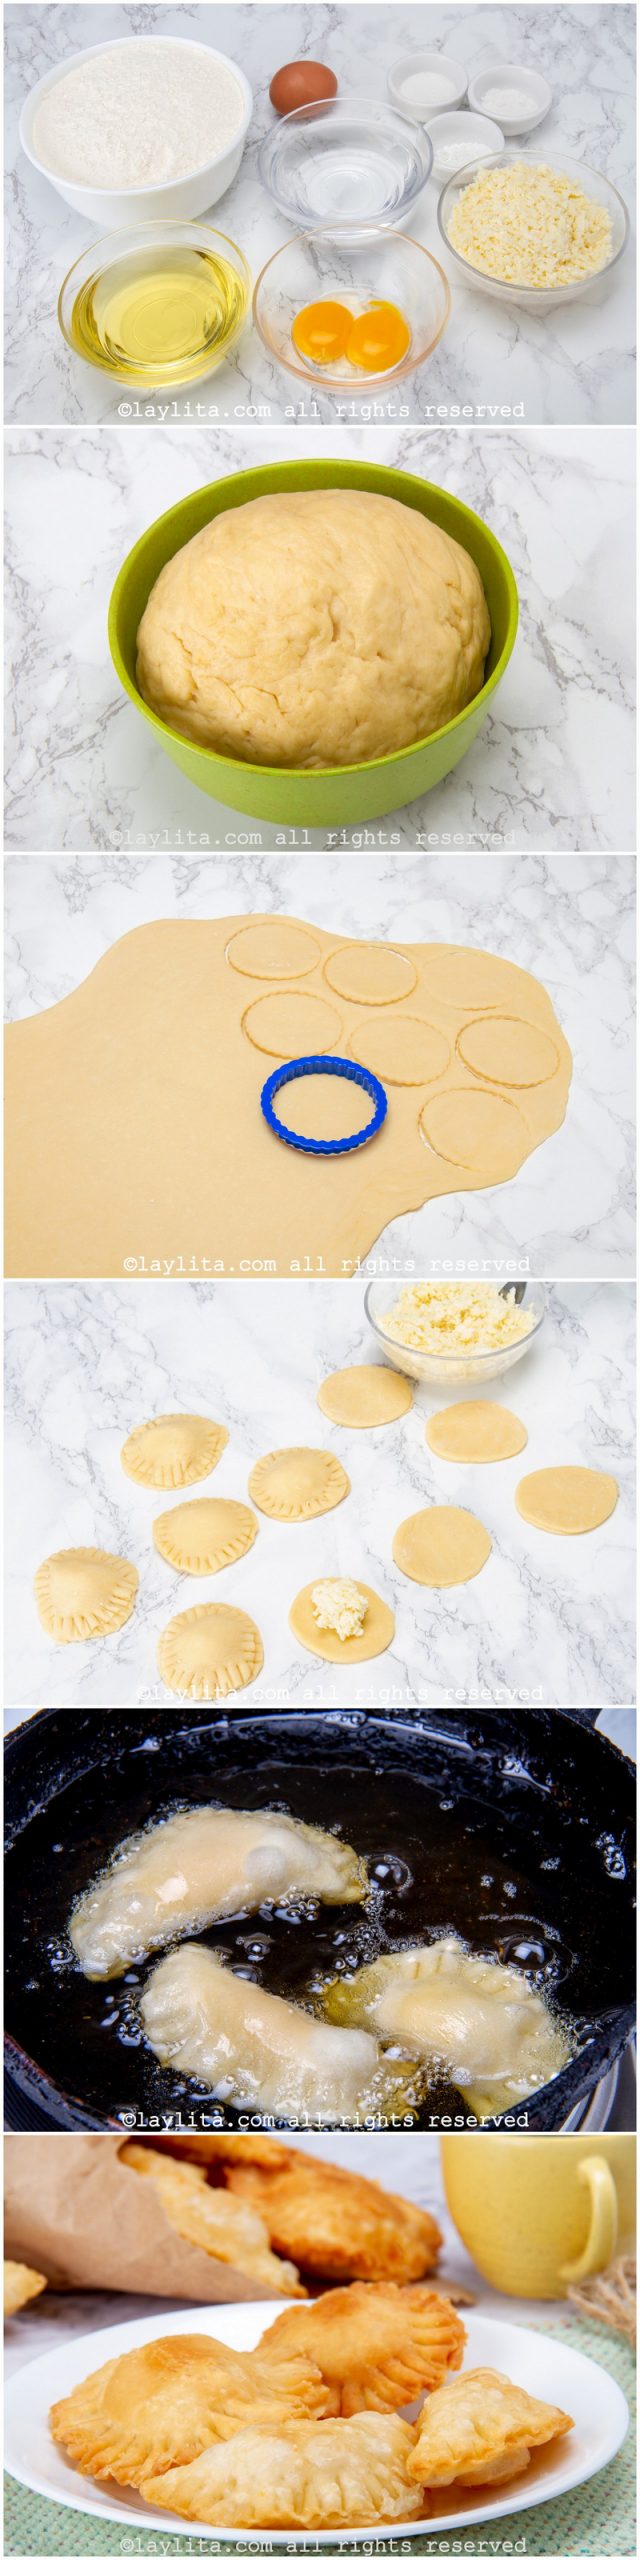 Como preparar pastelitos de queso